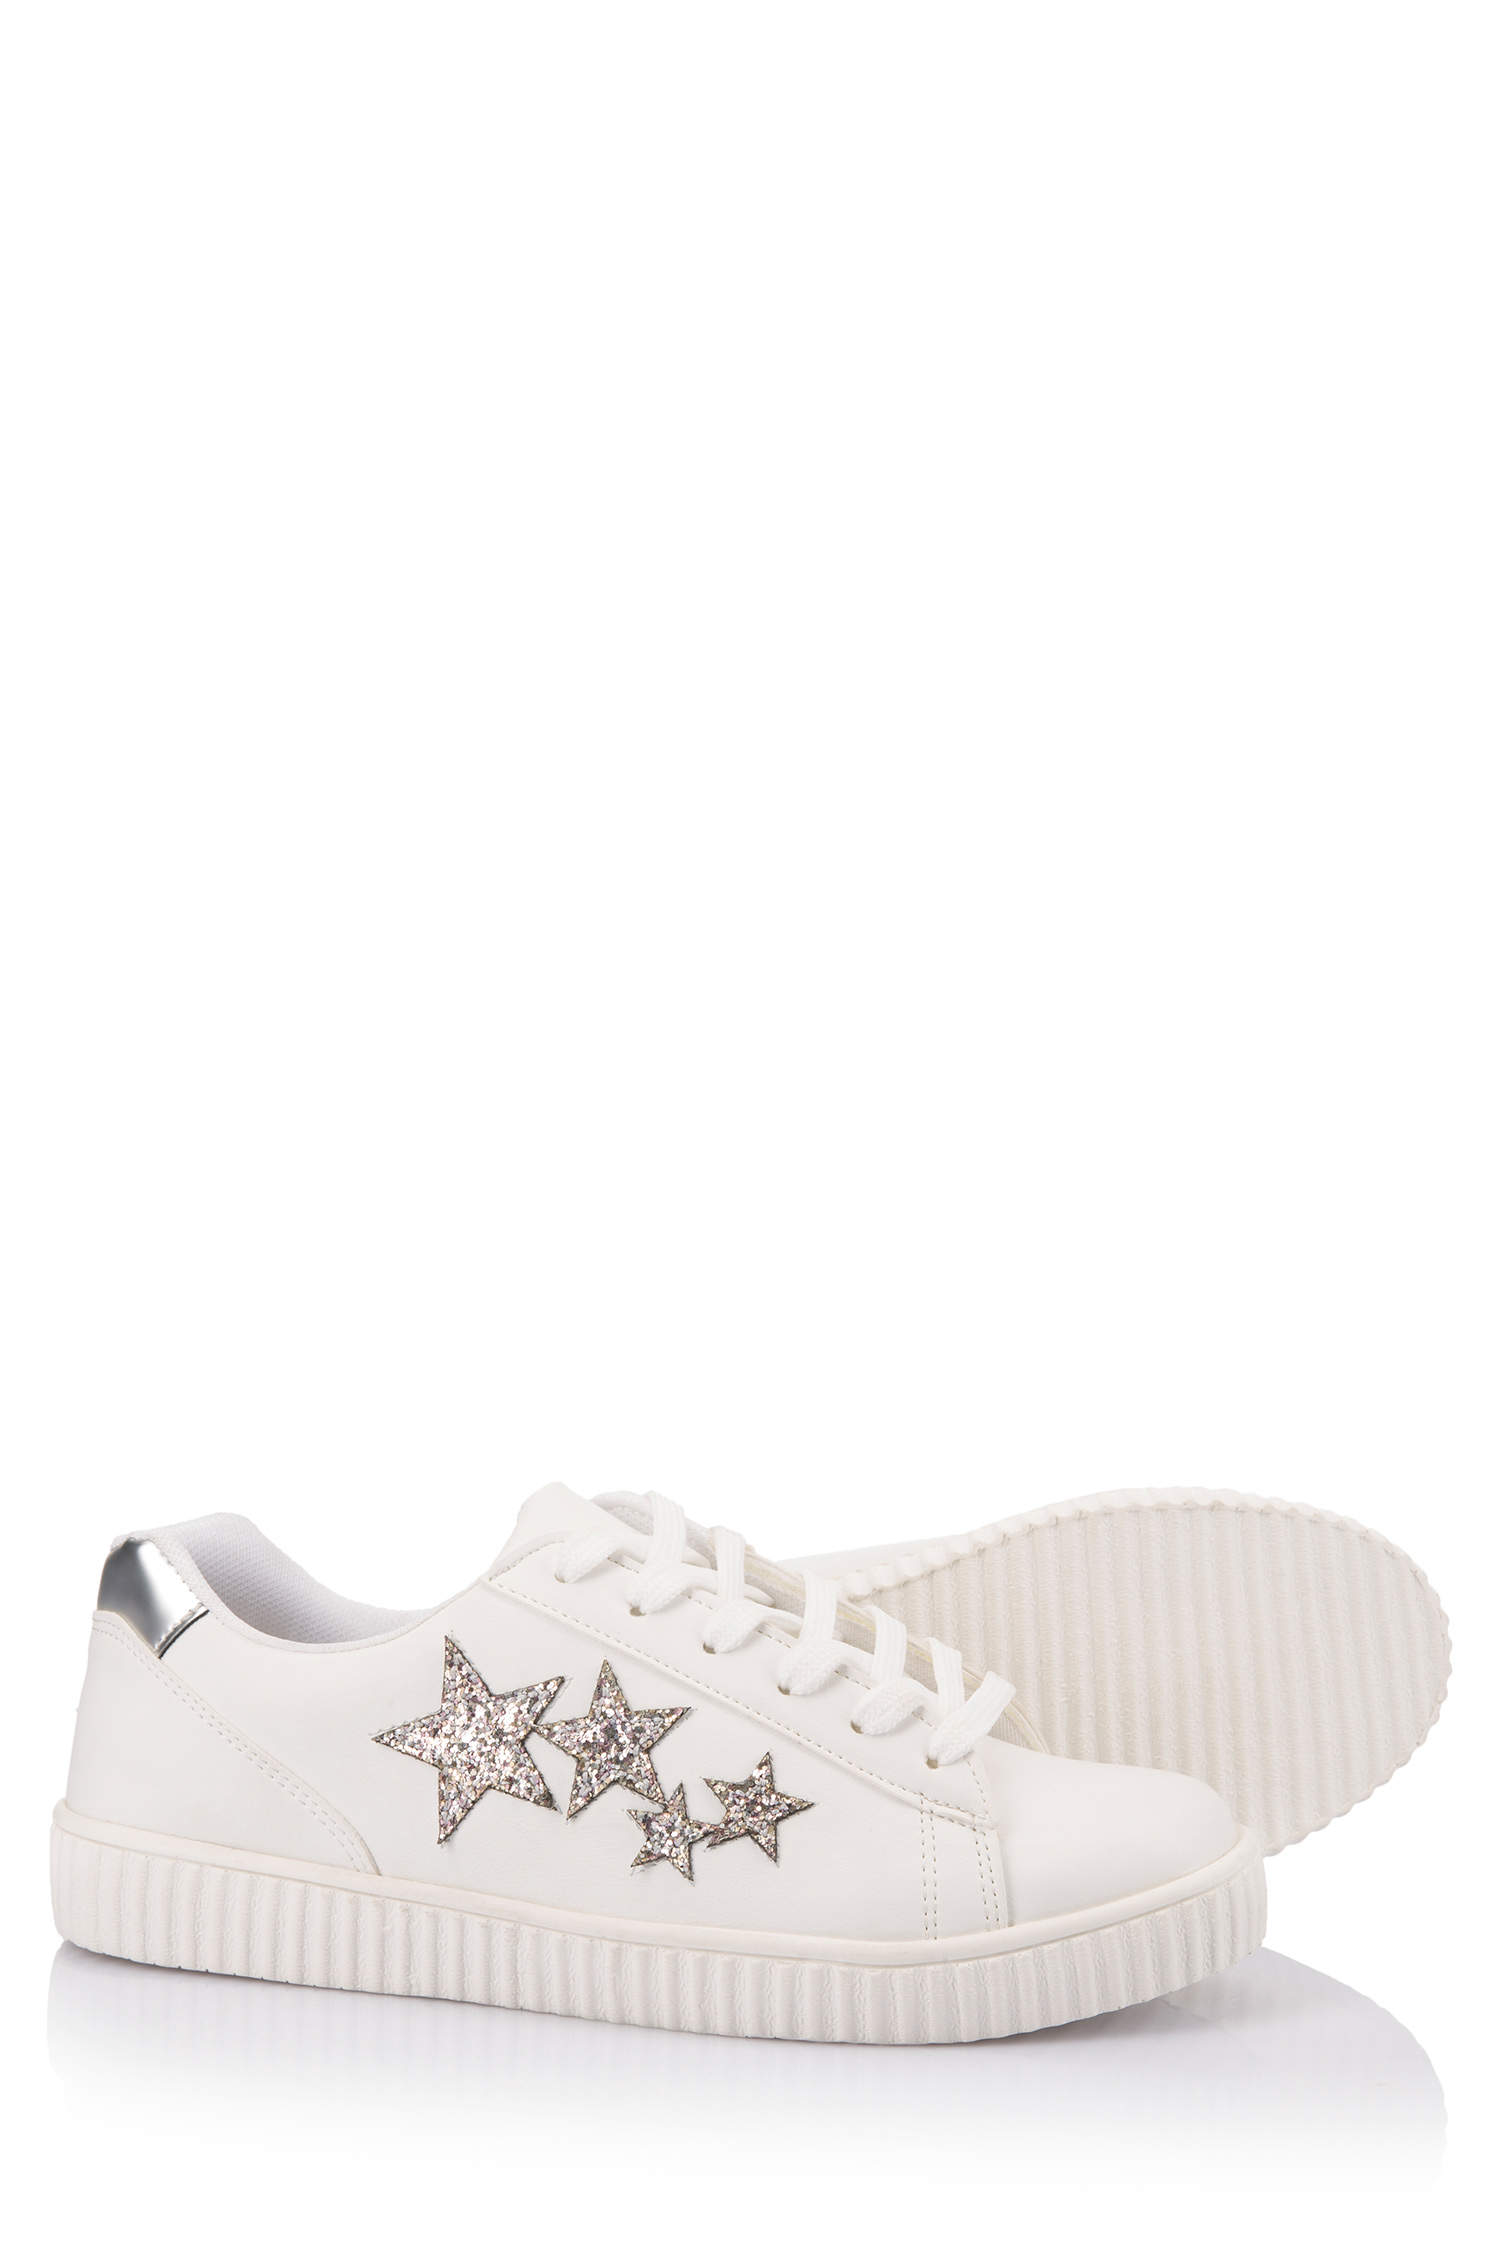 Defacto Yıldız Desenli Fashion Sneakers Ayakkabı. 4